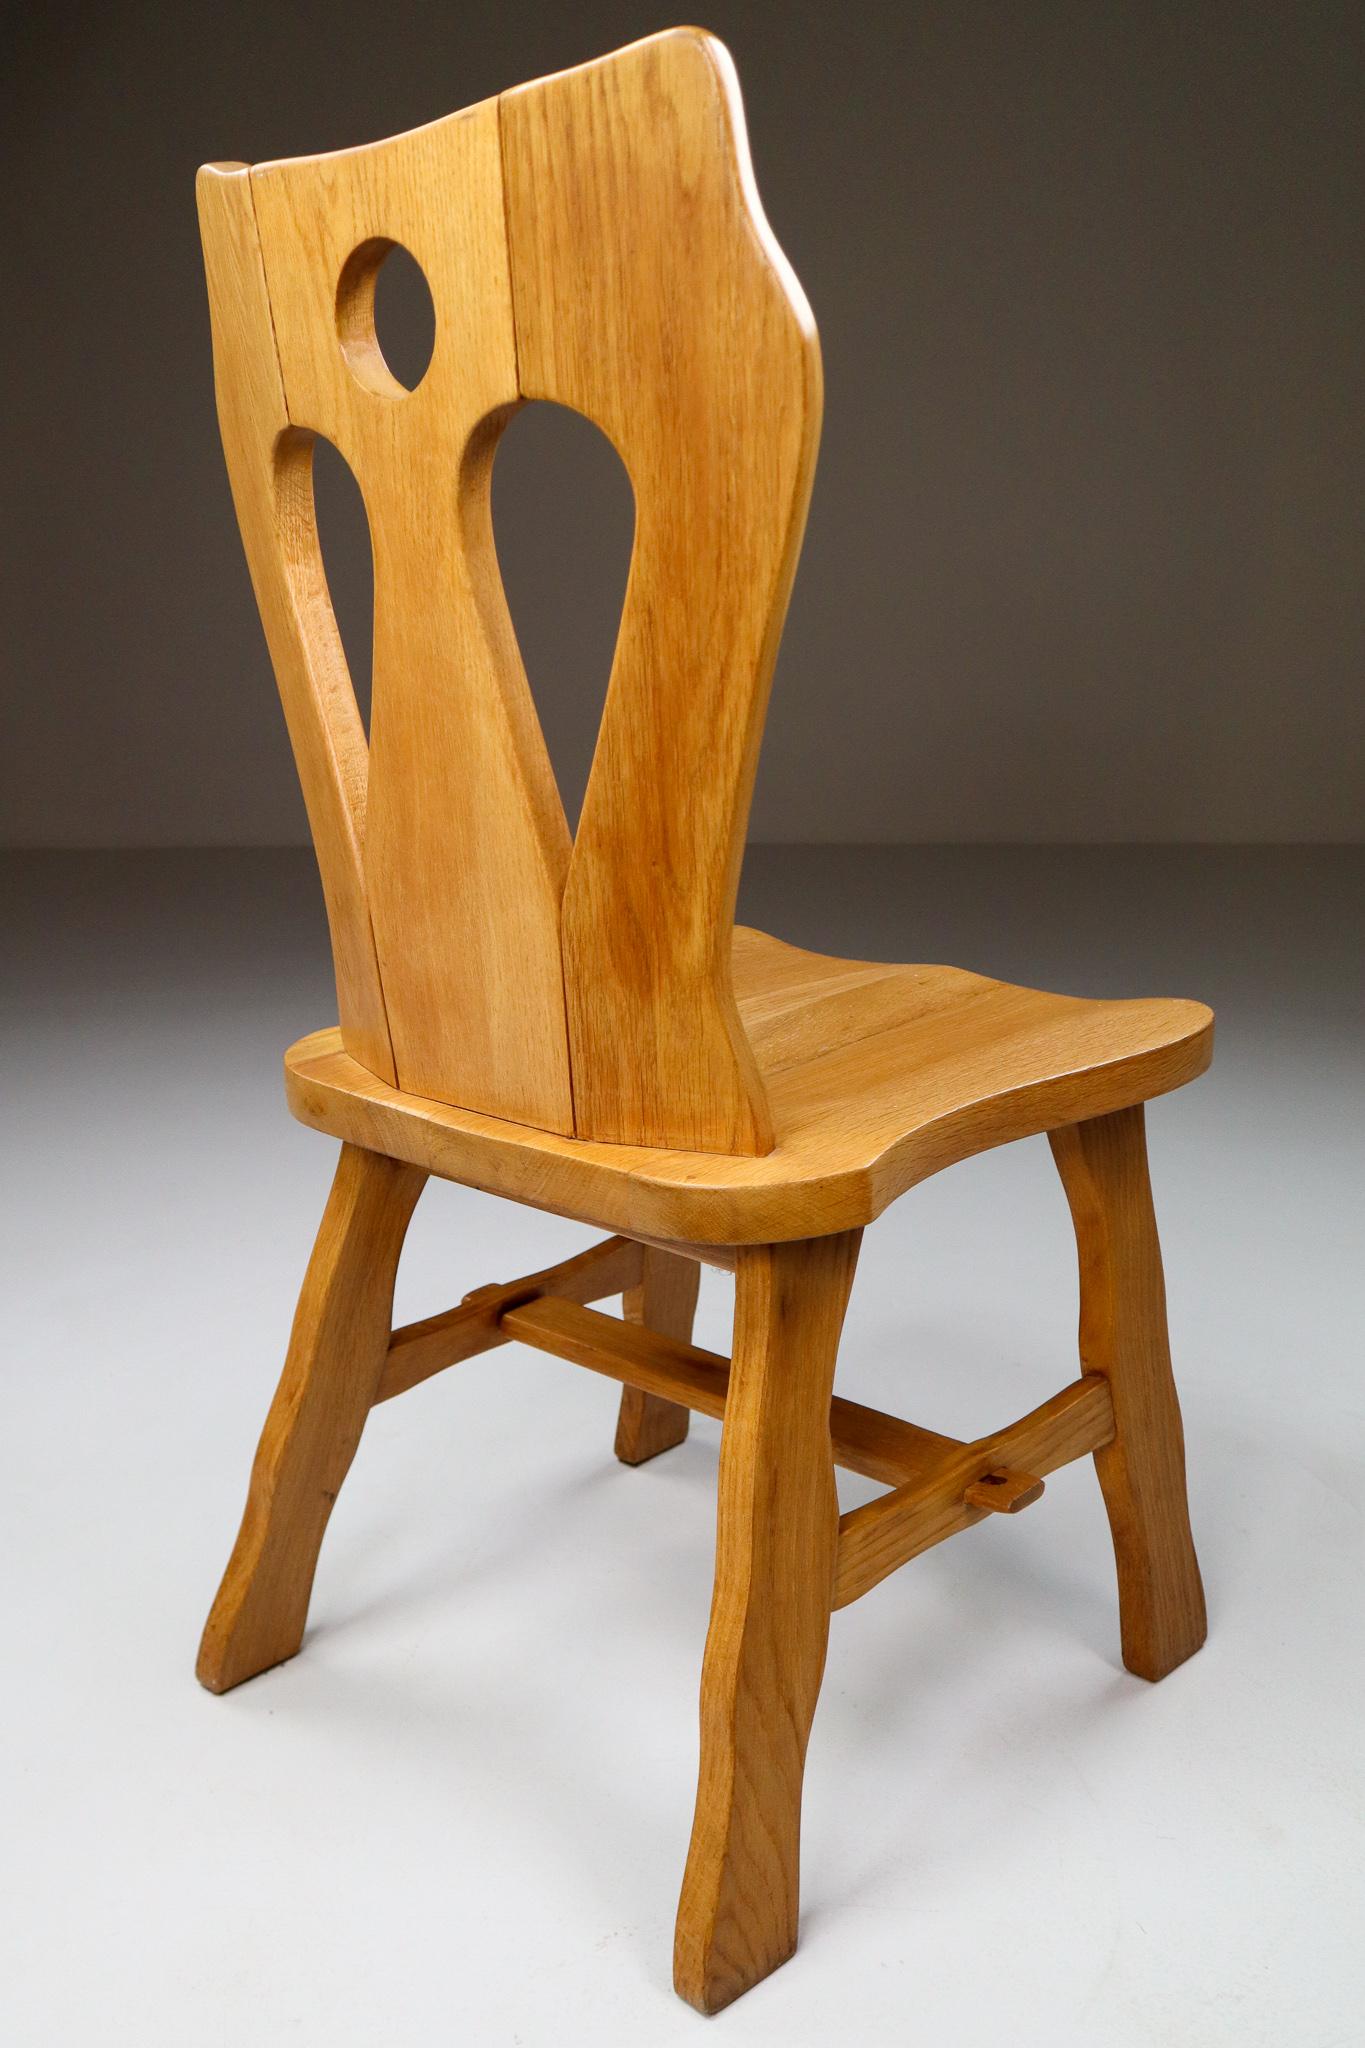 Satz von vier brutalistischen Stühlen aus blonder Eiche, Belgien, 1960er Jahre.

Ein Satz von vier Esszimmerstühlen aus Holz. Diese Stühle sind aus blonder Eiche gefertigt und werden von Hand skulptural bearbeitet. Die Handwerkskunst ist immer